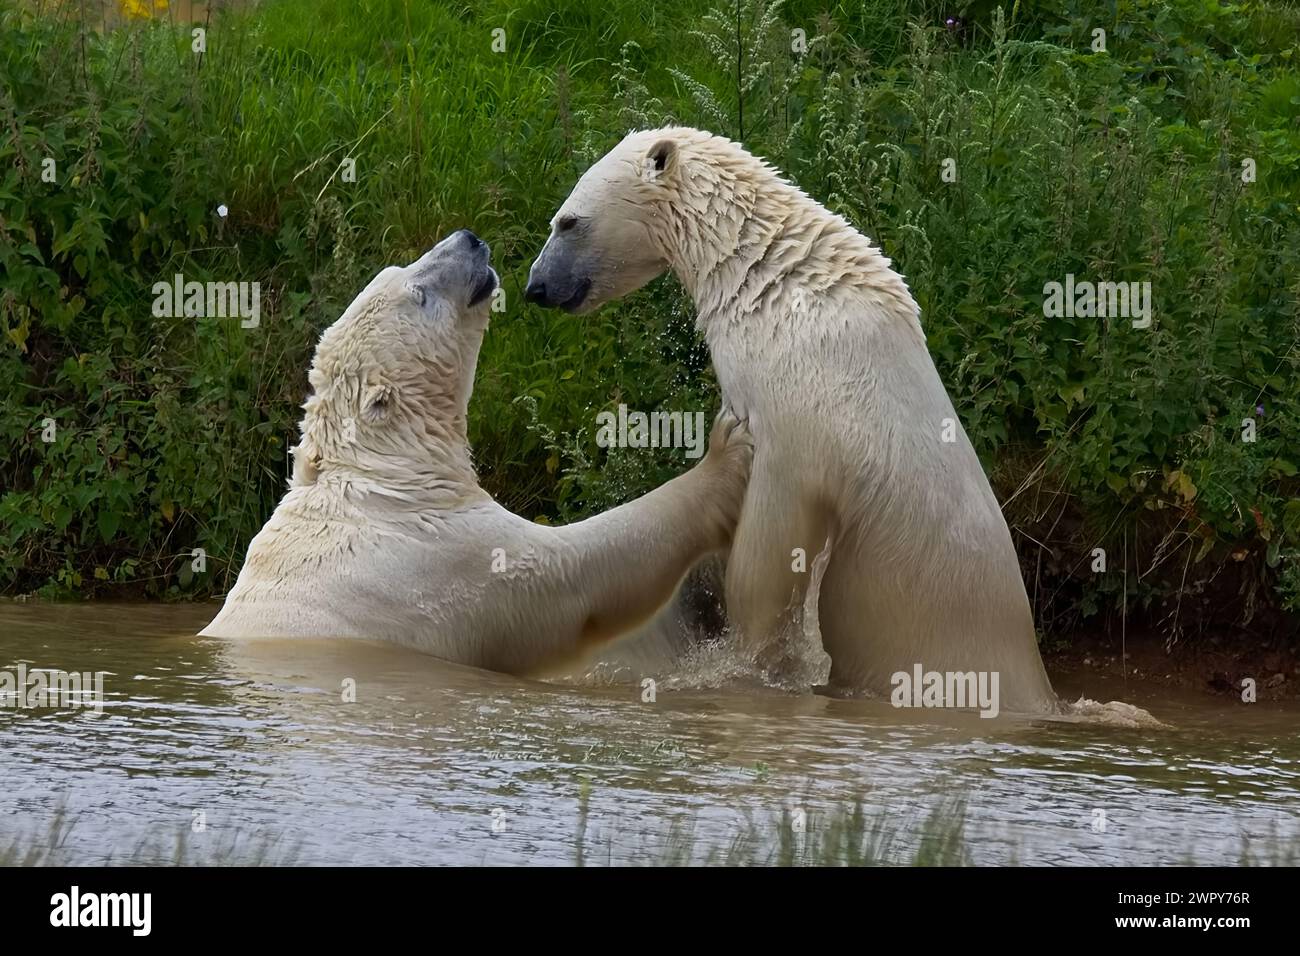 Zwei Eisbären mit dickem weißem Pelz kämpfen an einem warmen Tag in einem Pool, um kühl zu bleiben. Stockfoto